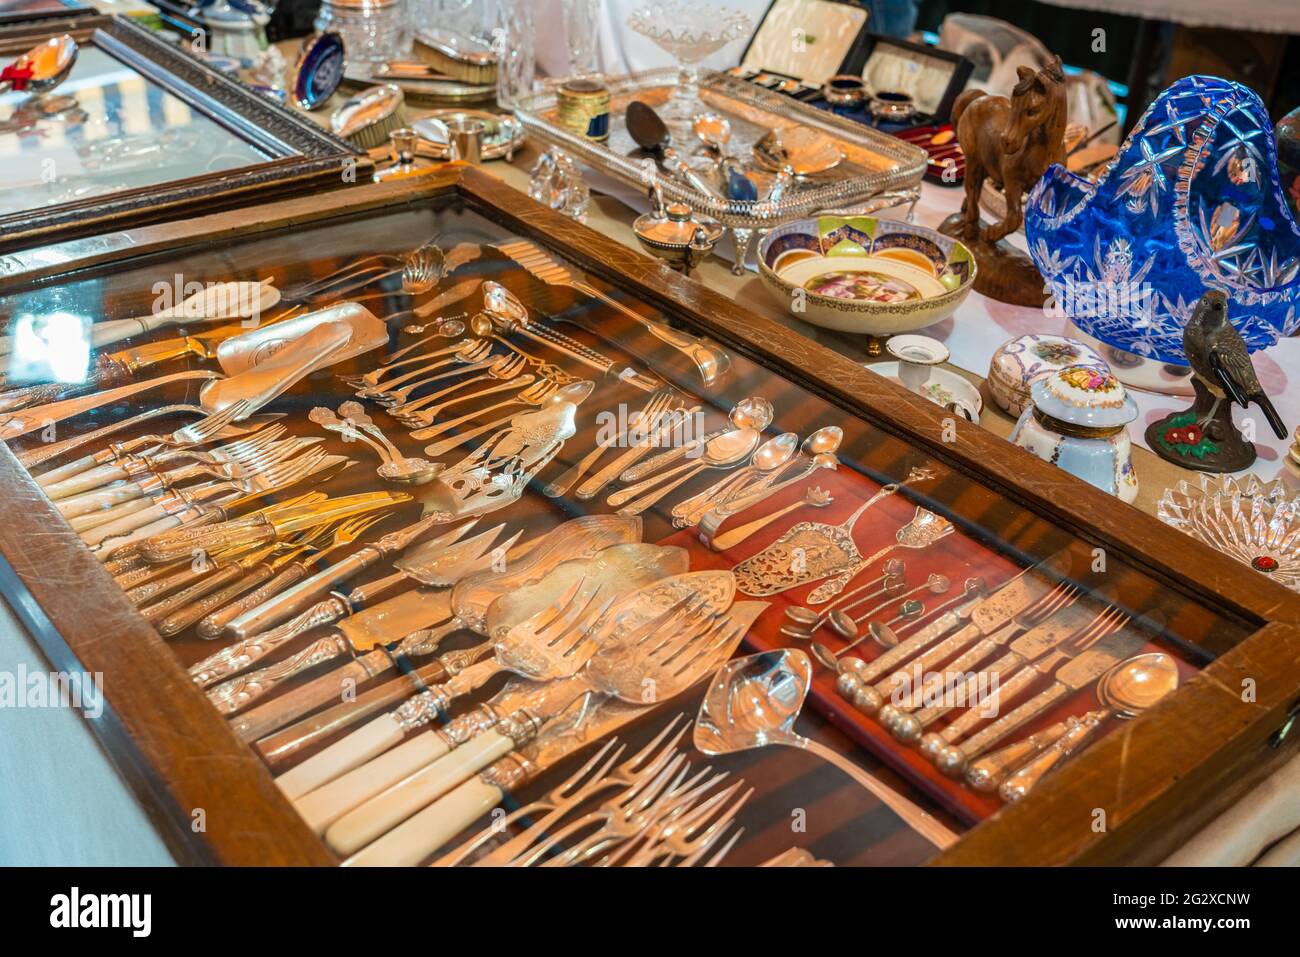 BARCELLONA, SPAGNA - 10 GIUGNO 2019: Oggetti antichi, monete, gioielli, stoviglie e altri utensili in un mercato delle pulci Foto Stock